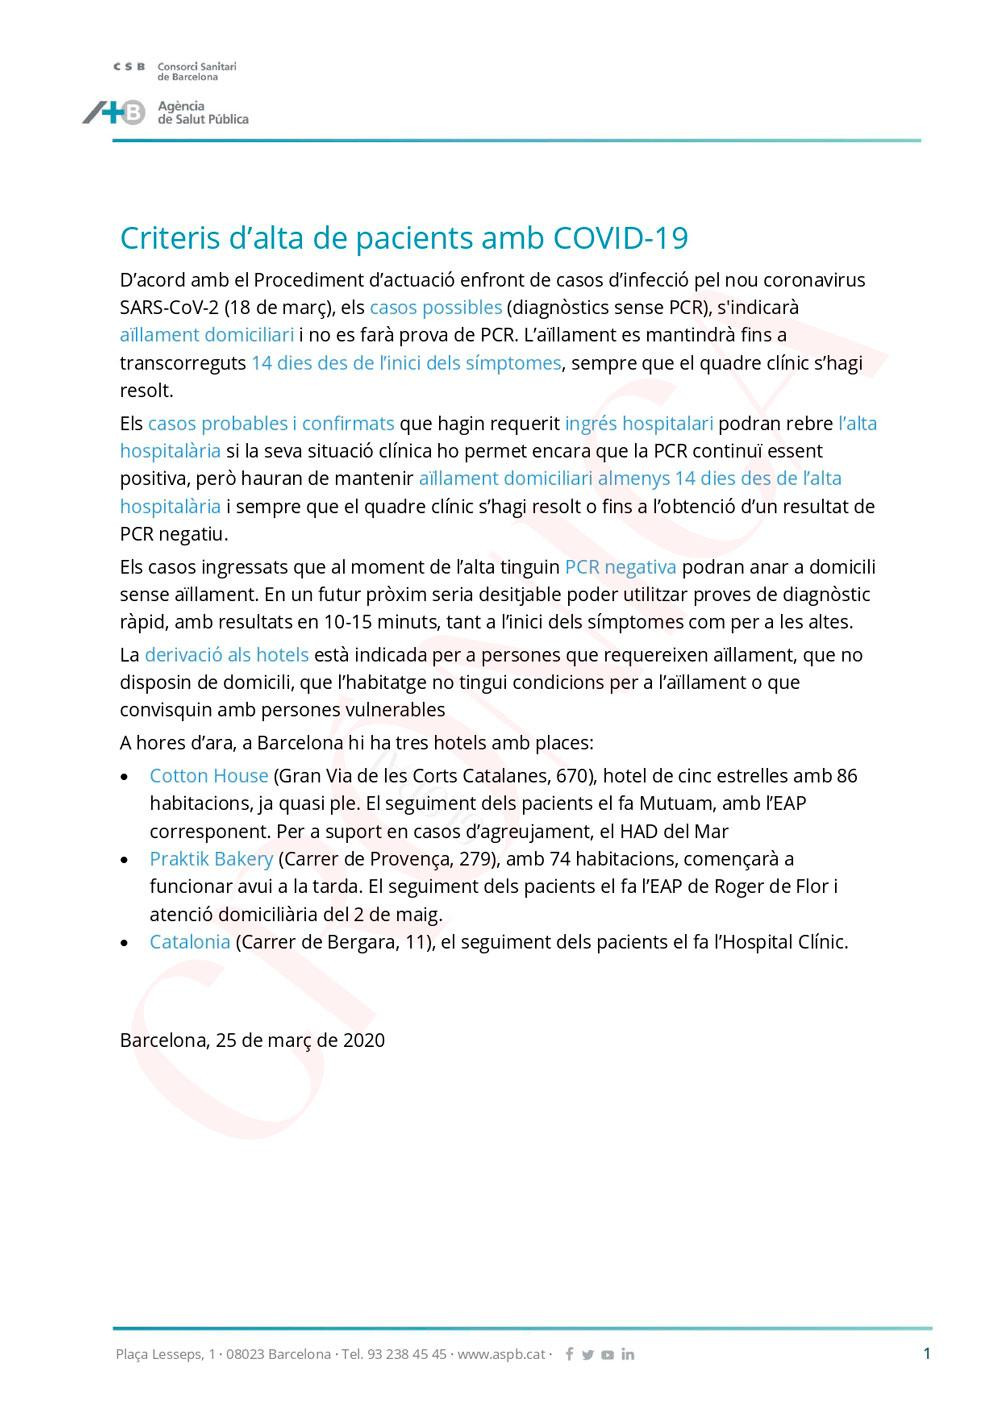 Protocolo de test PCR por contagio con SARS-CoV-2 del Consorci Sanitari de Barcelona, formado por Ayuntamiento y Generalitat / CG